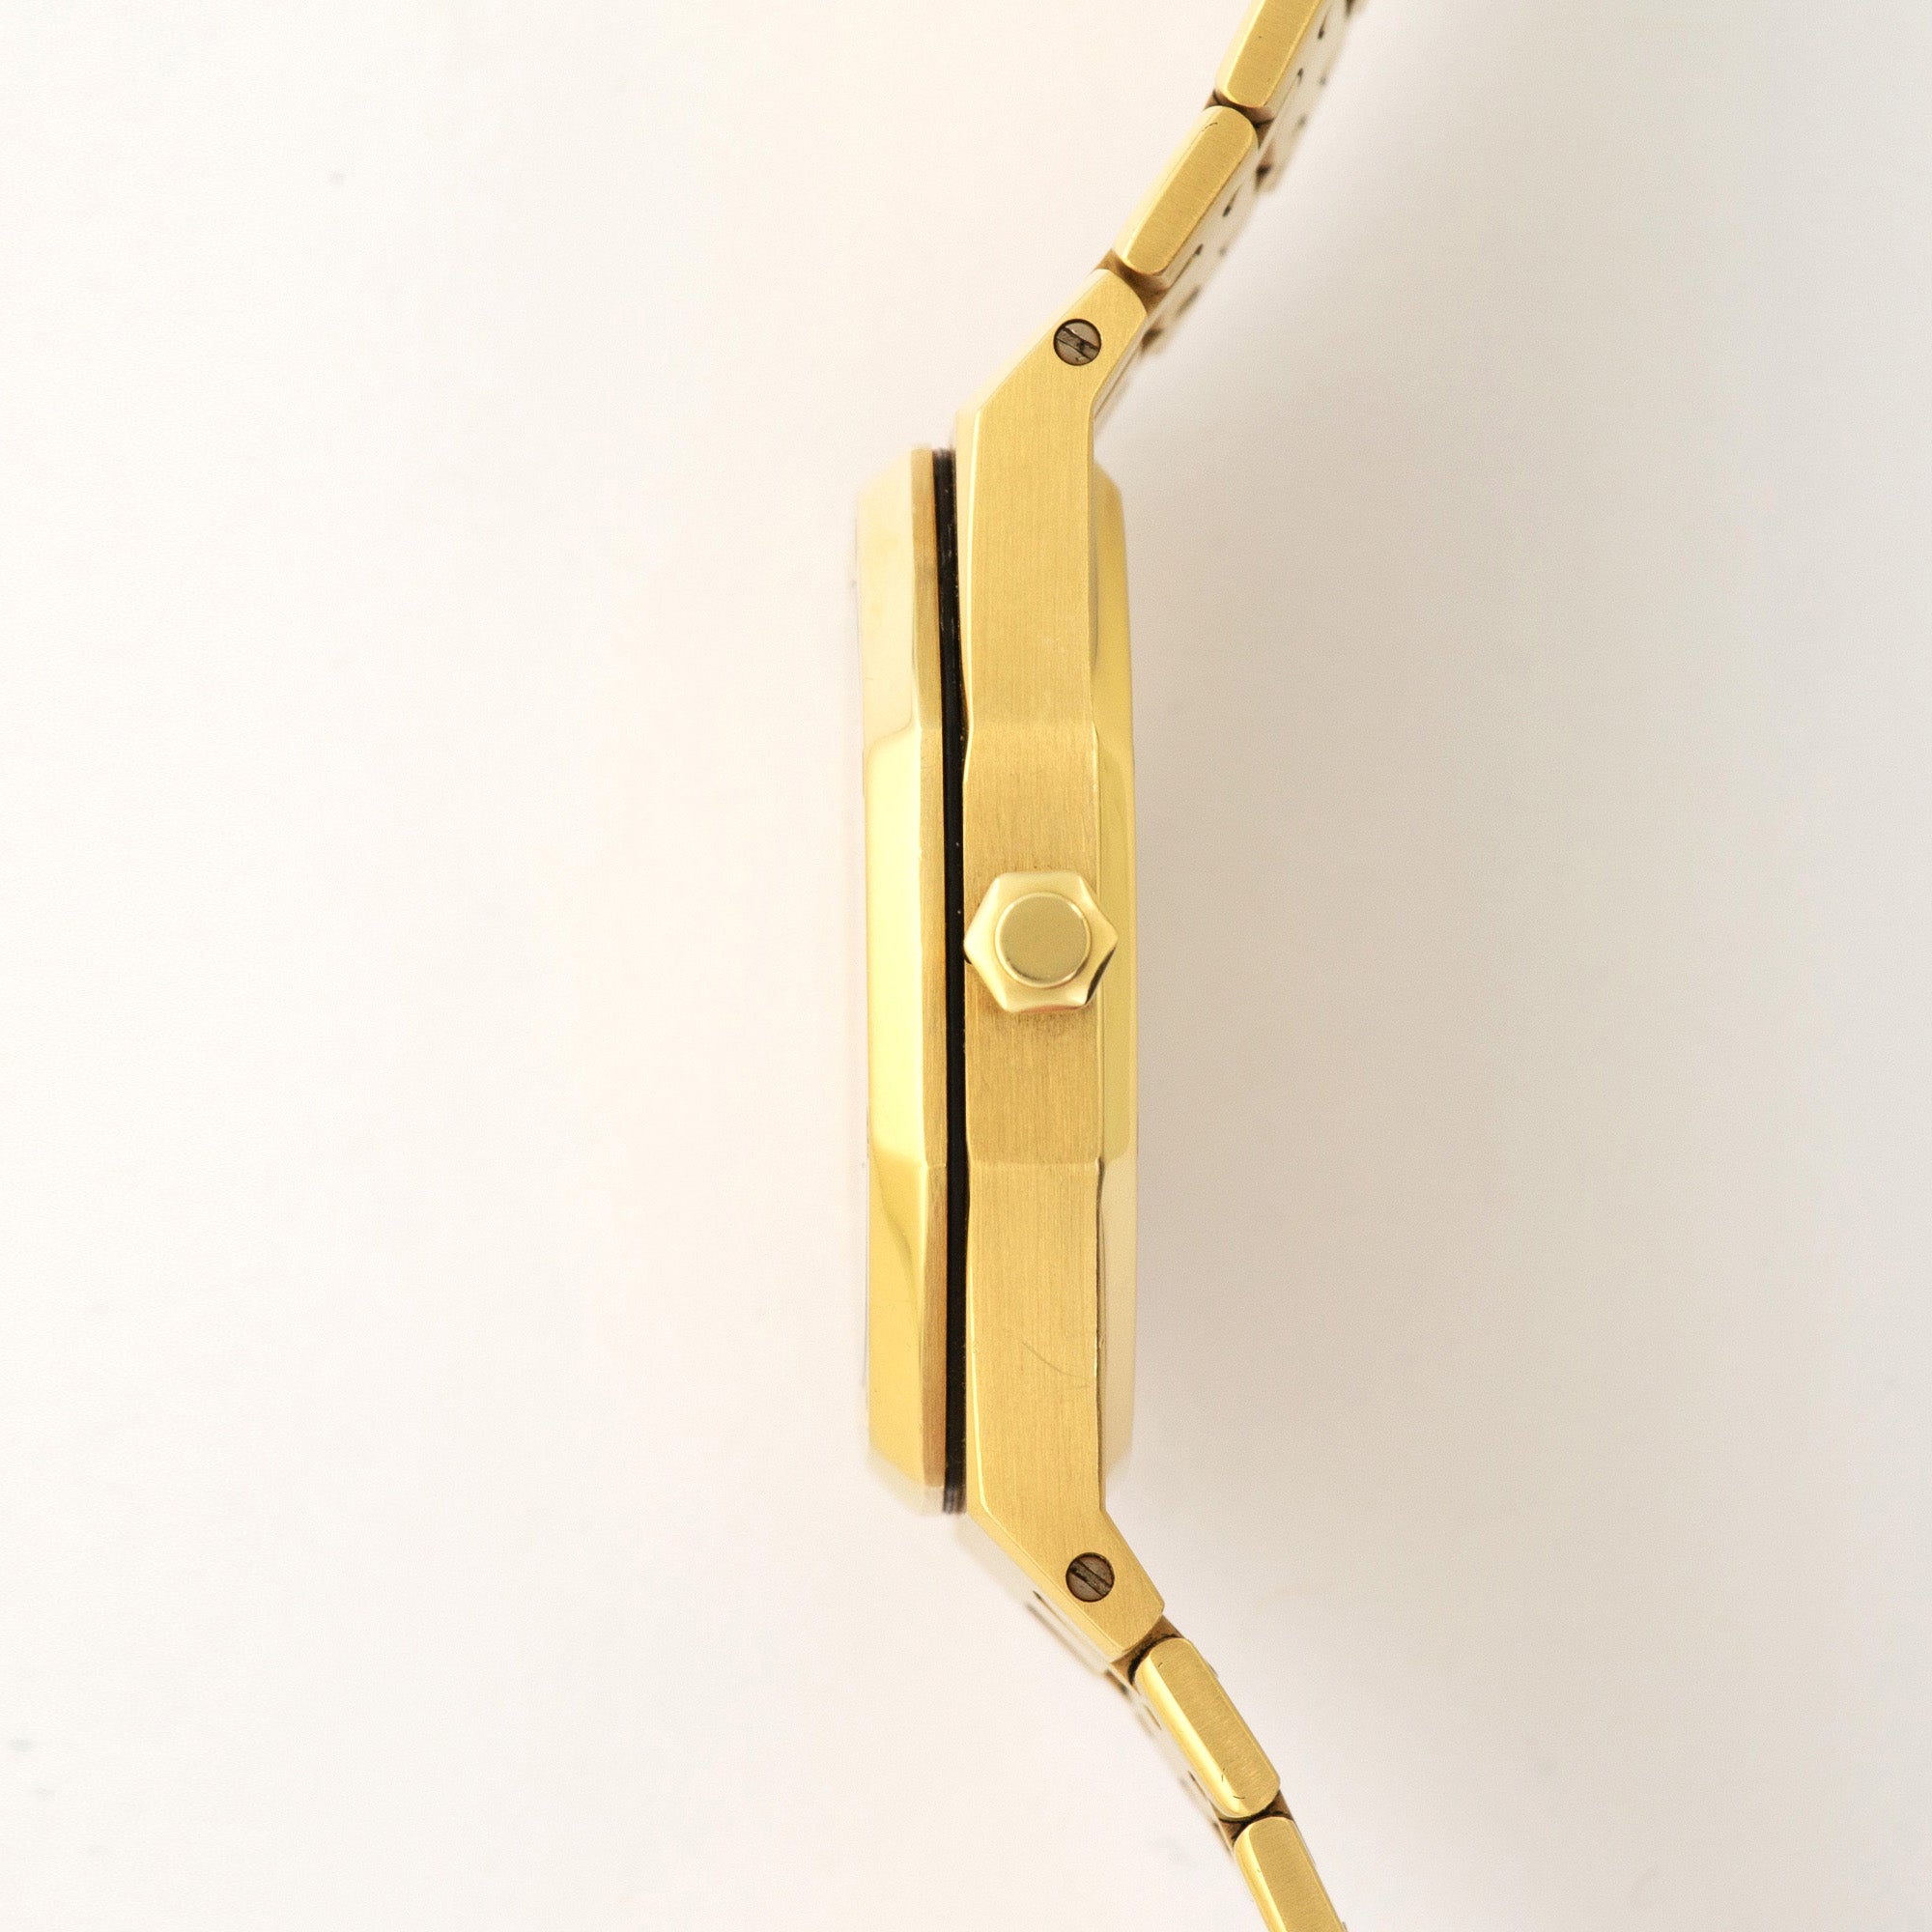 Audemars Piguet - Audemars Piguet Yellow Gold Royal Oak Moonphase Day-Date Watch Ref. 5594 - The Keystone Watches